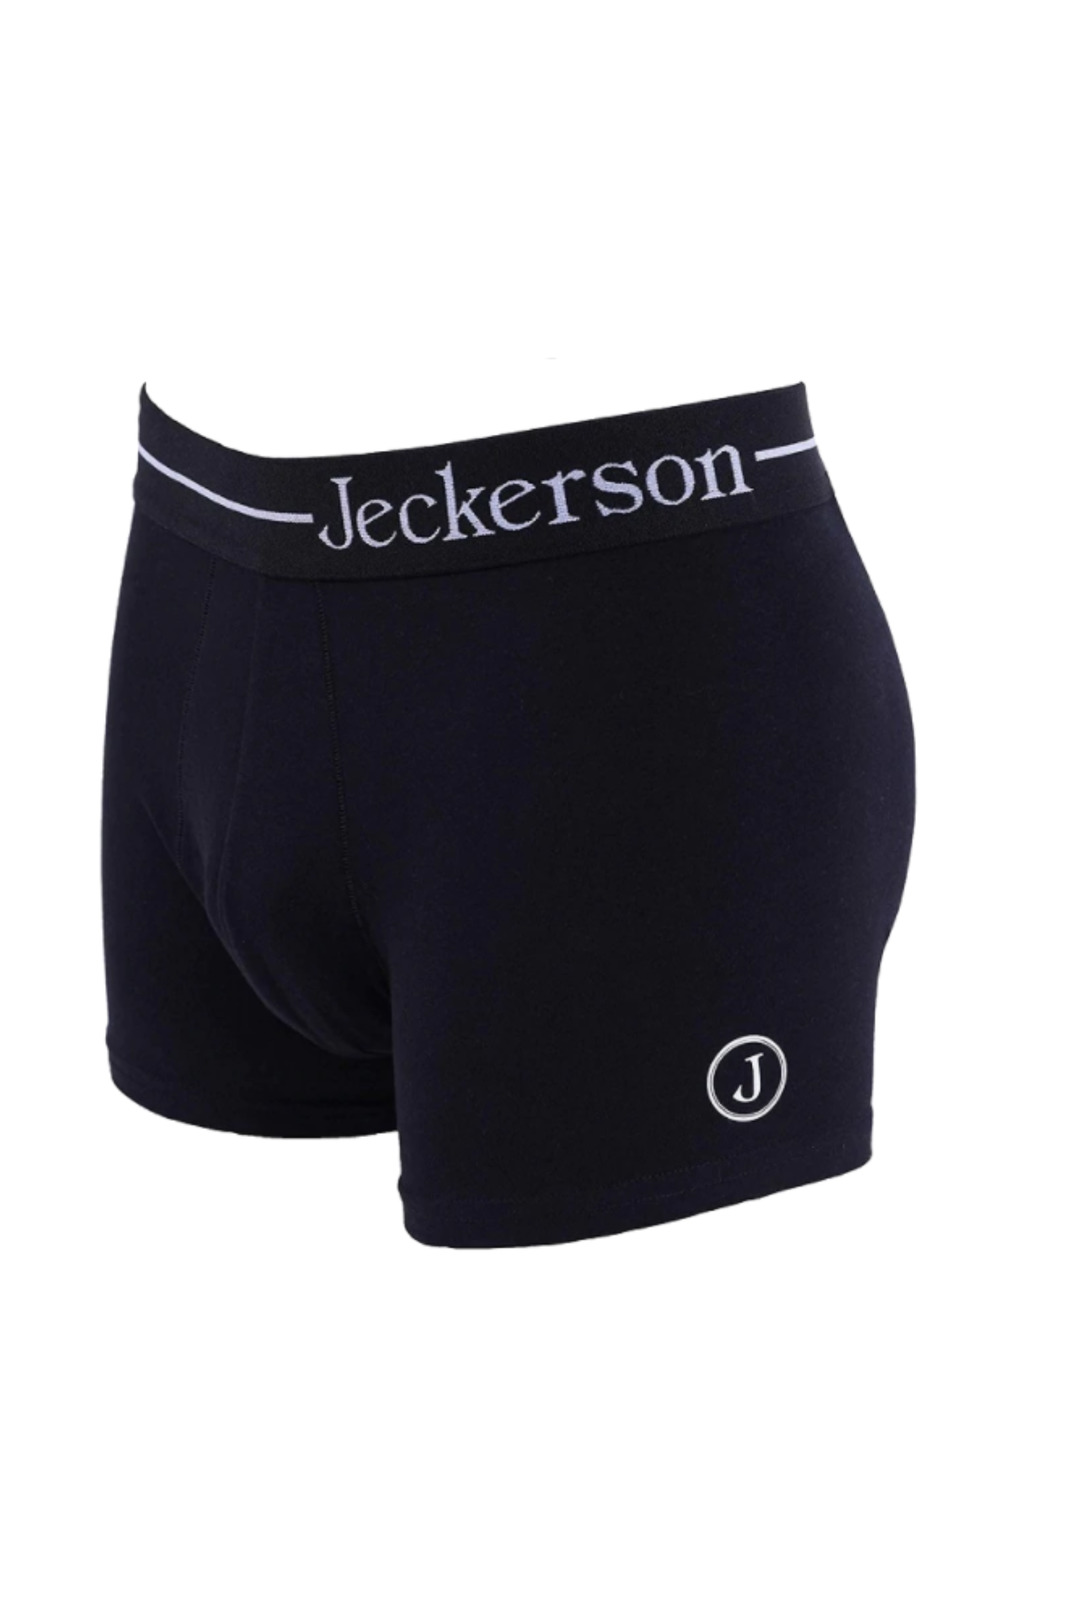 Jeckerson Black Boxers for Men - P20P00UIN002